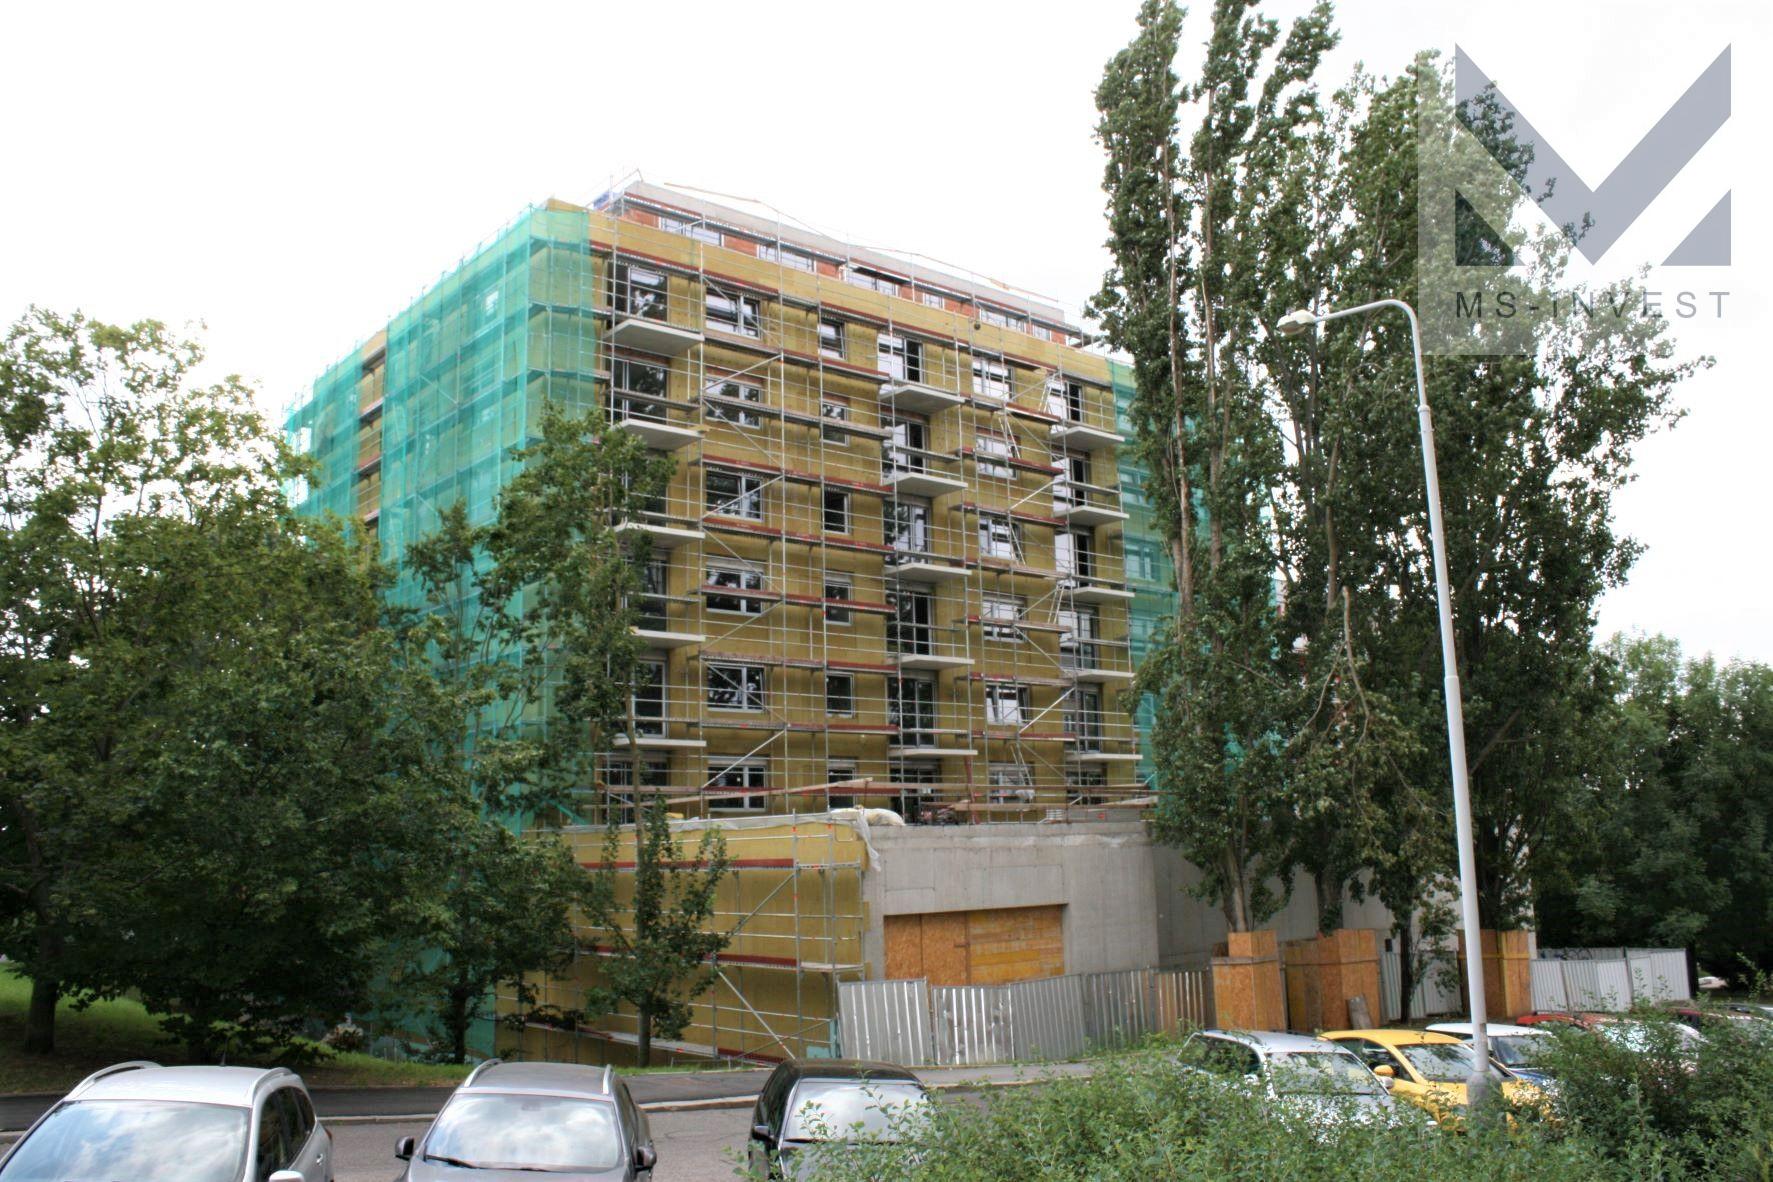 Byt 4+kk (5G) 110 m2 s balkonem 4,8 m2 v novostavbě bytového domu v Řepích